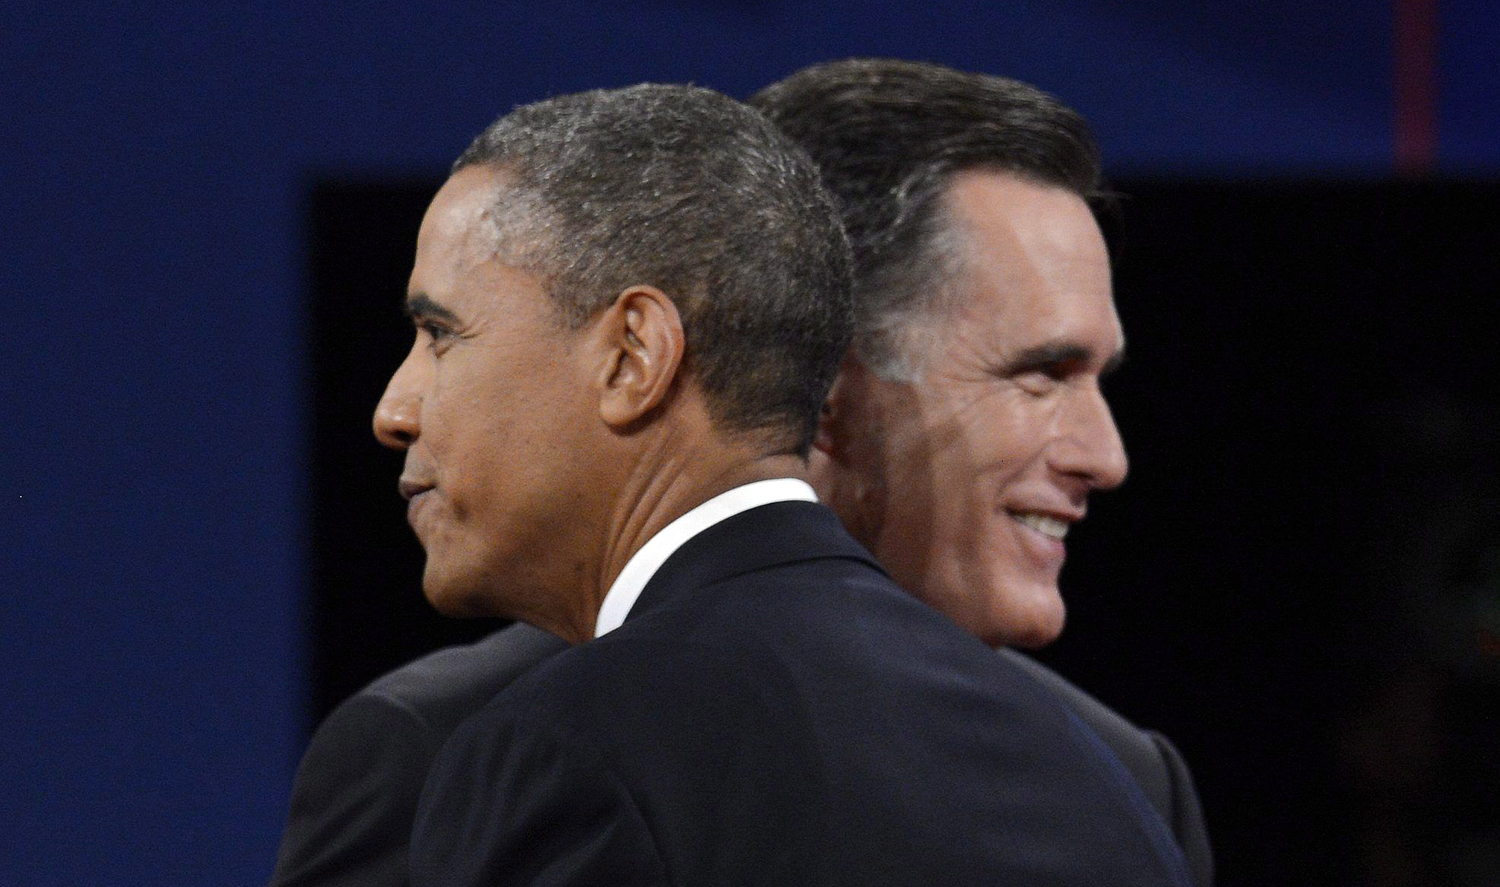 Obama és Romney a vita előtt. Hideg fejek, poénok